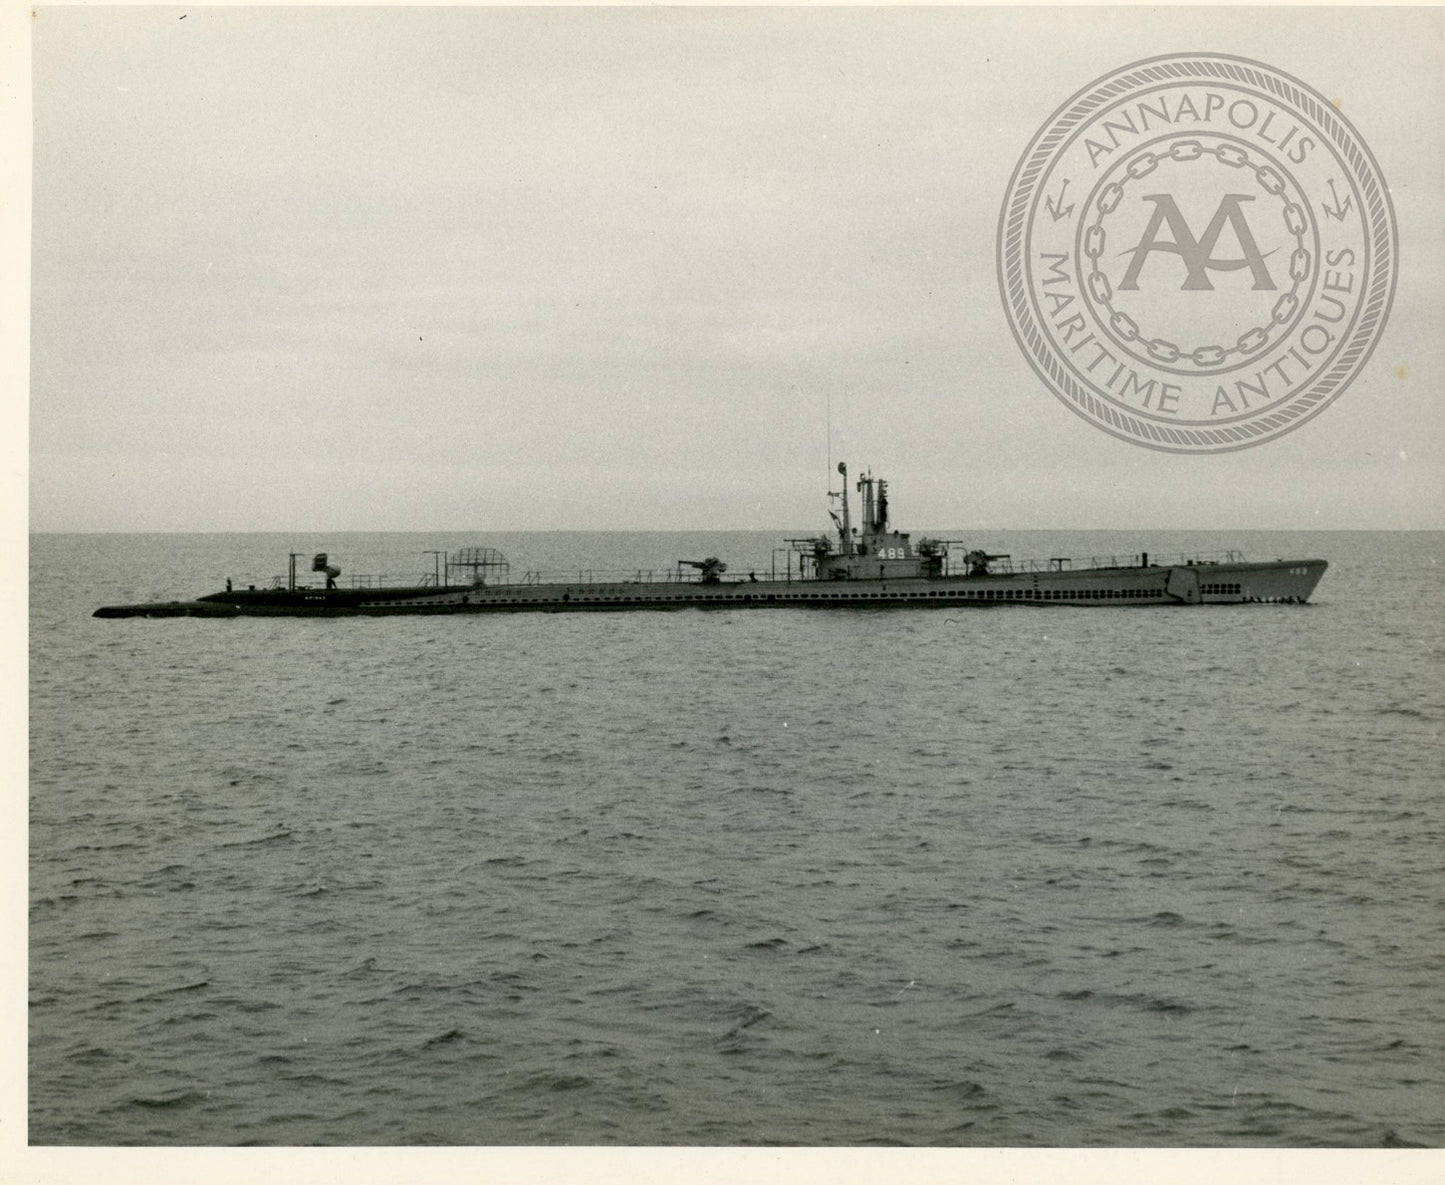 USS Sarda (SS-489) Submarine